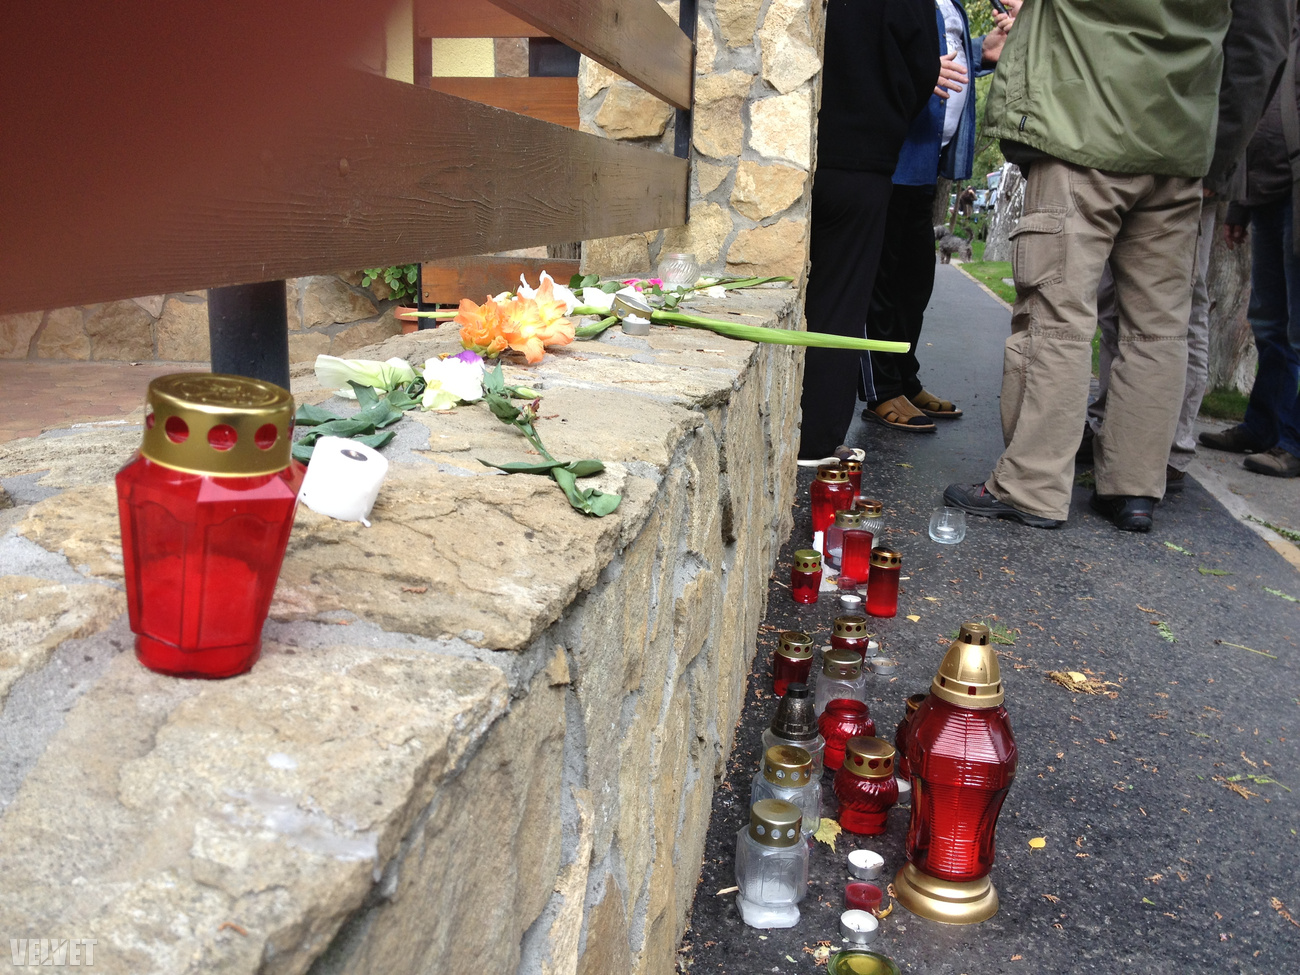 Ötven méterre az úttól virágok és gyertyák jelzik, hol találták meg a holttestet.